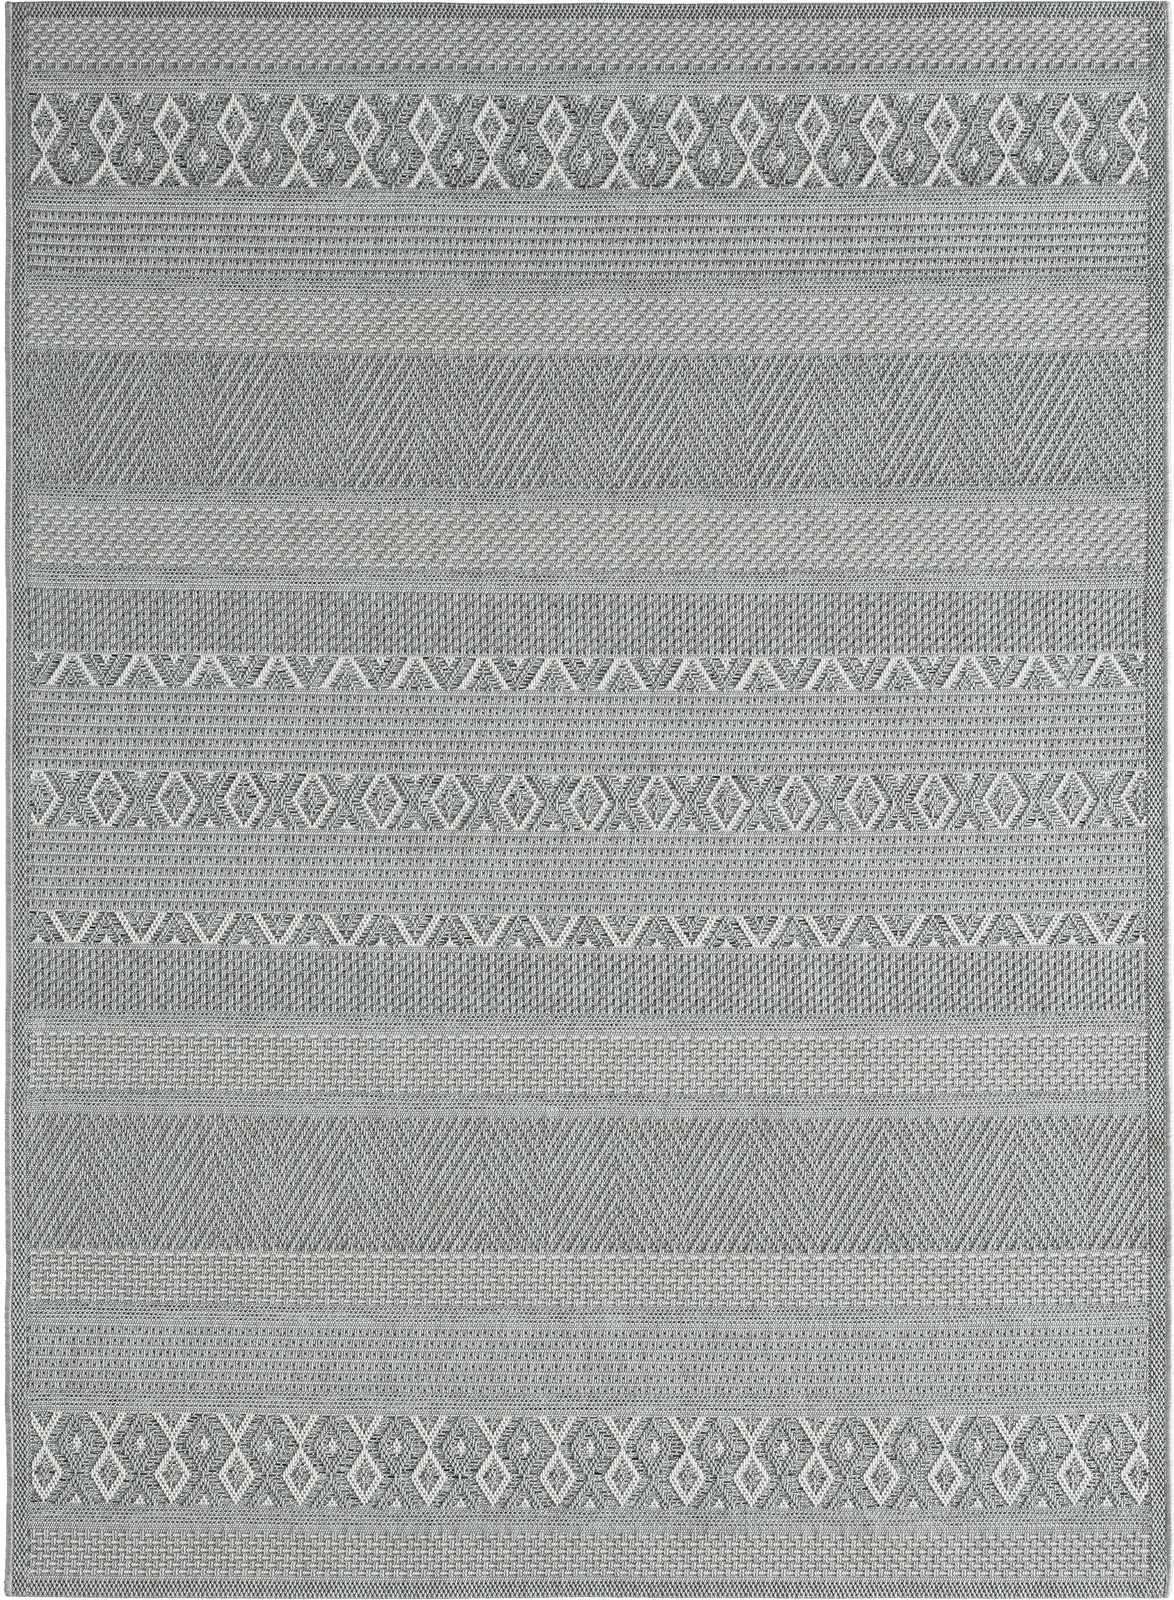             Buitenkleed met eenvoudig patroon in grijs - 280 x 200 cm
        